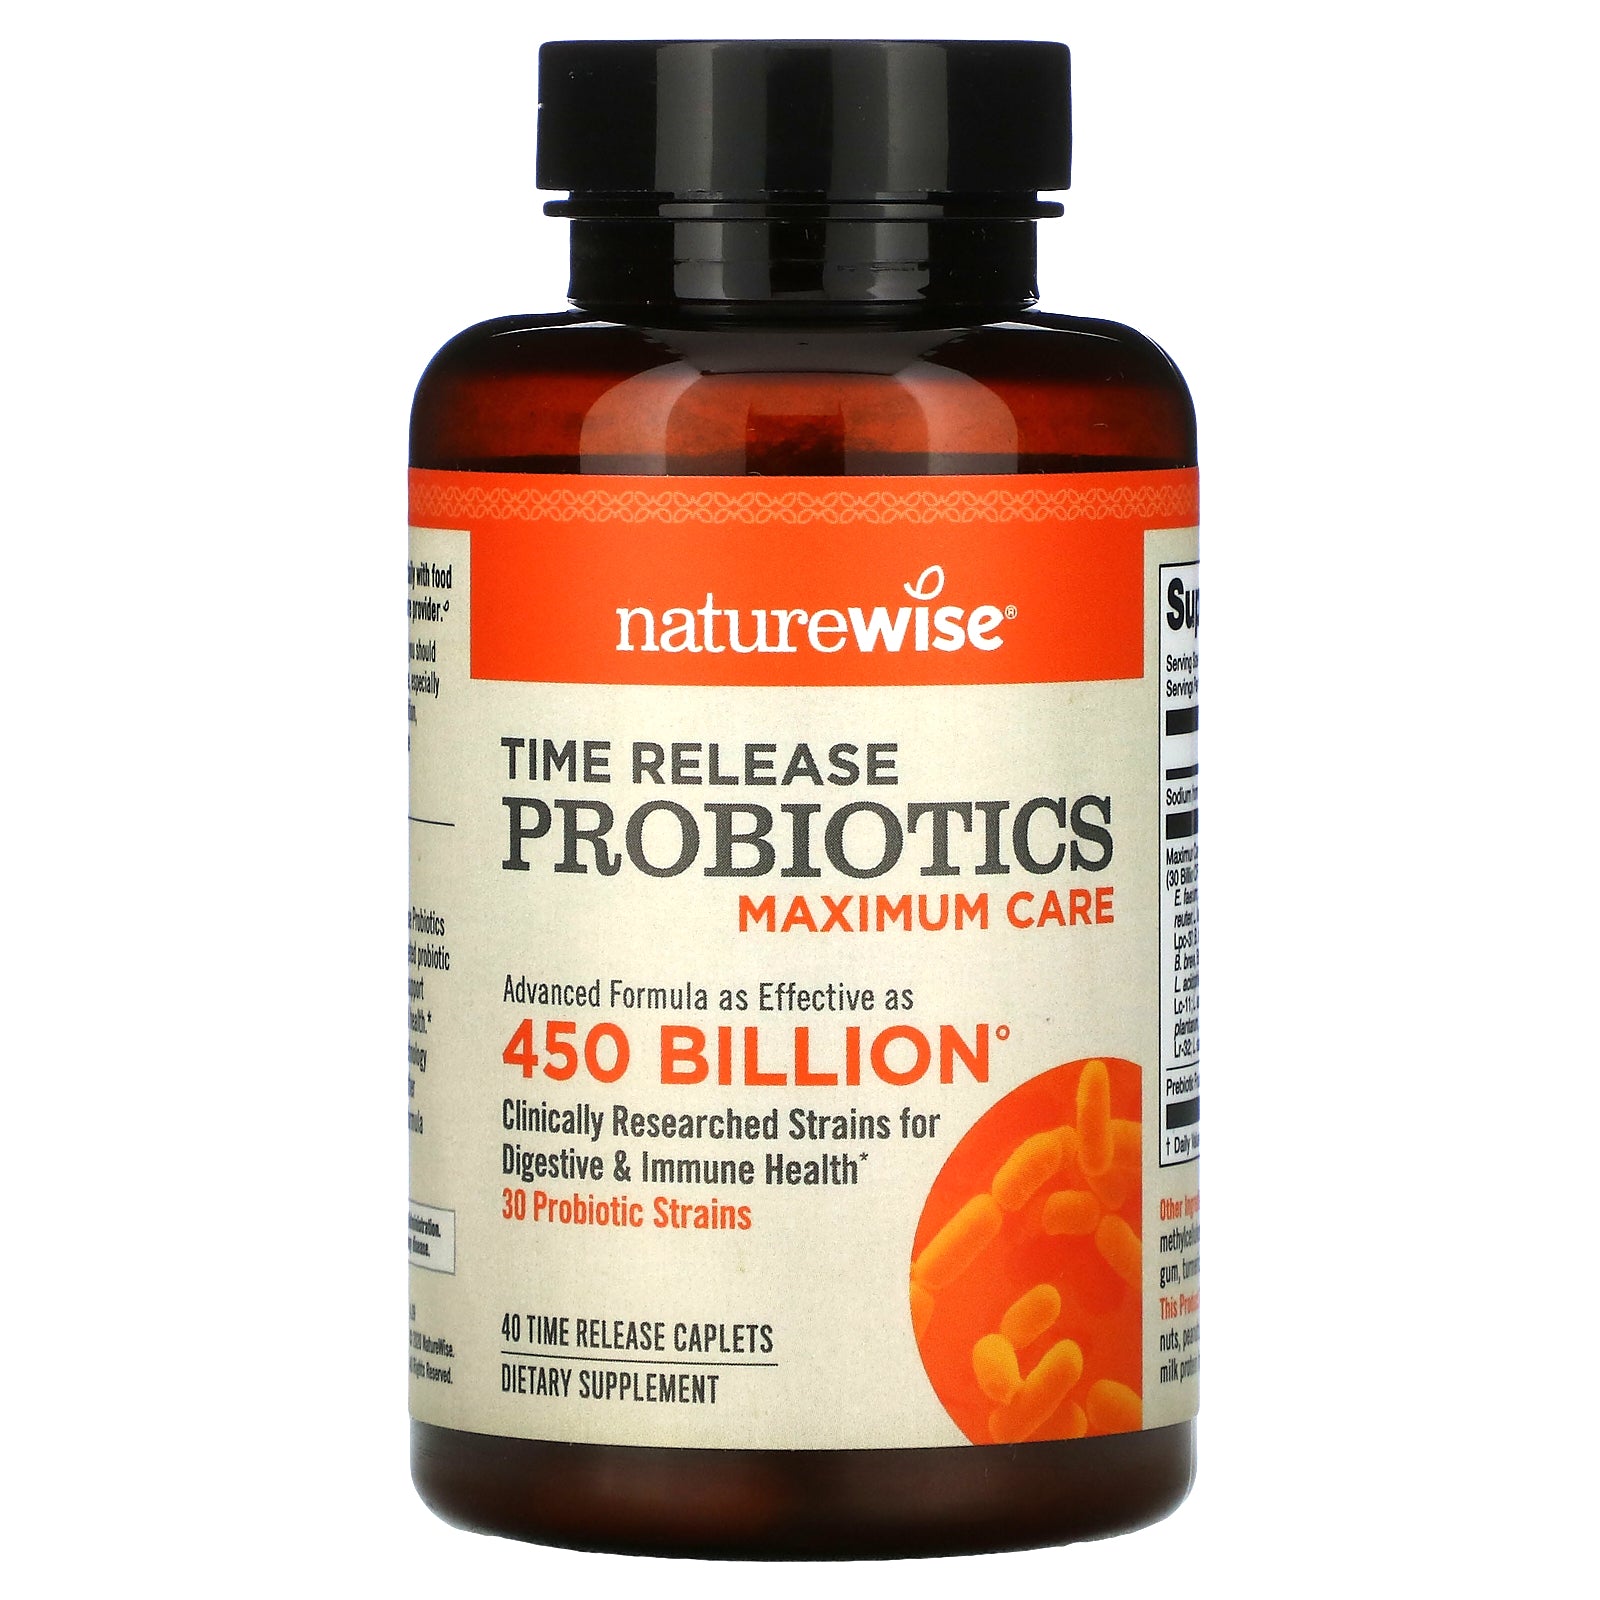 NatureWise, Time Release Probiotics, Maximum Care Time Release Caplets